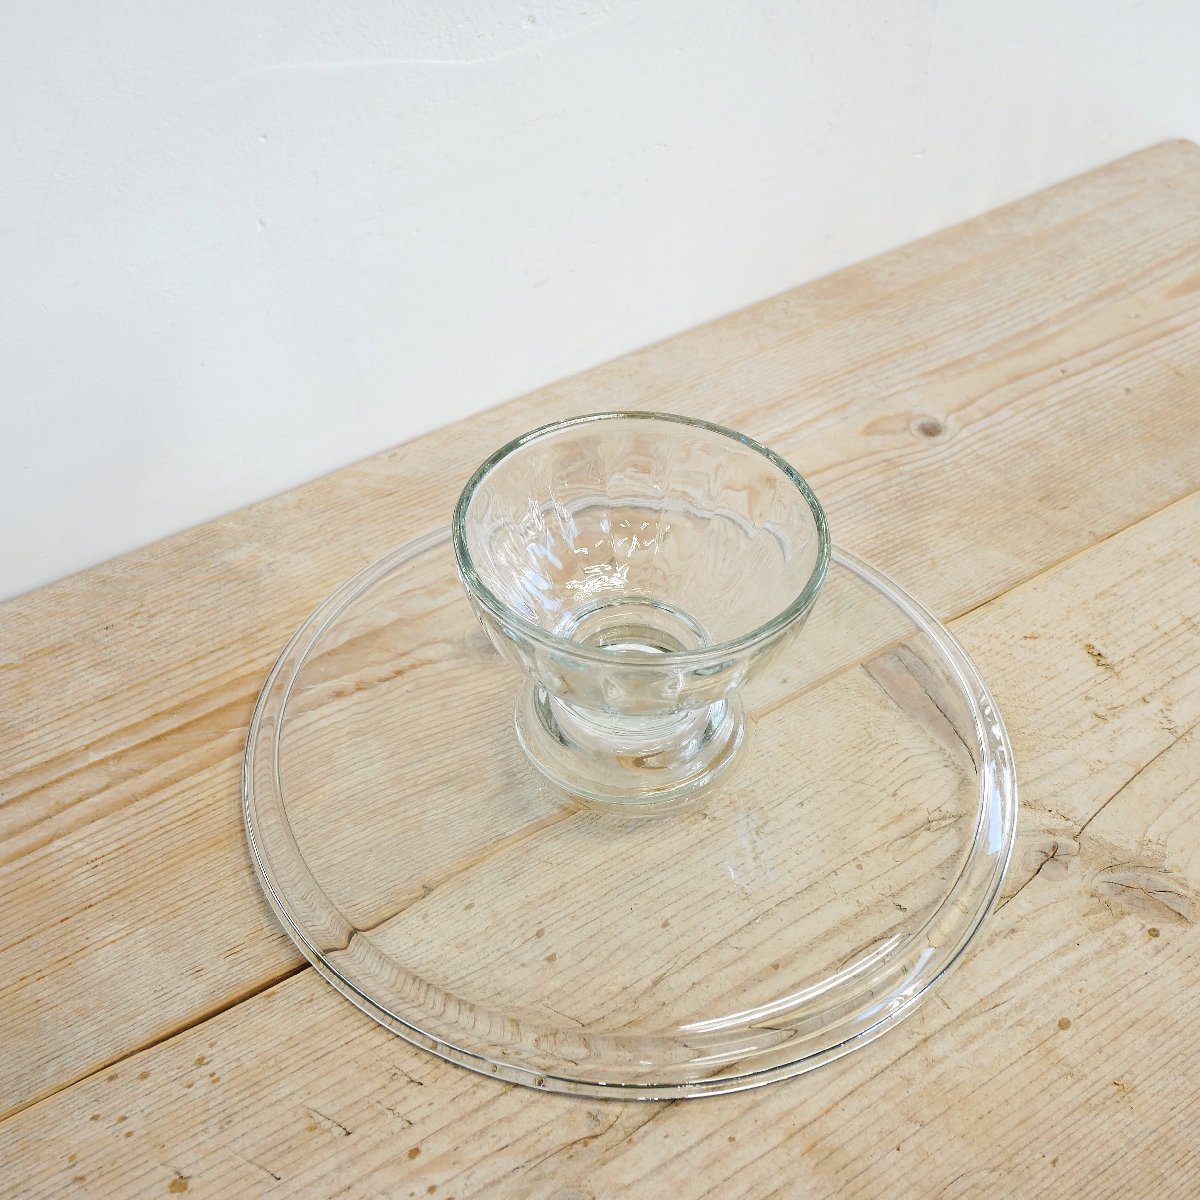 アンティーク ケーキドーム ガラス製 ホールケーキ カフェ インテリア